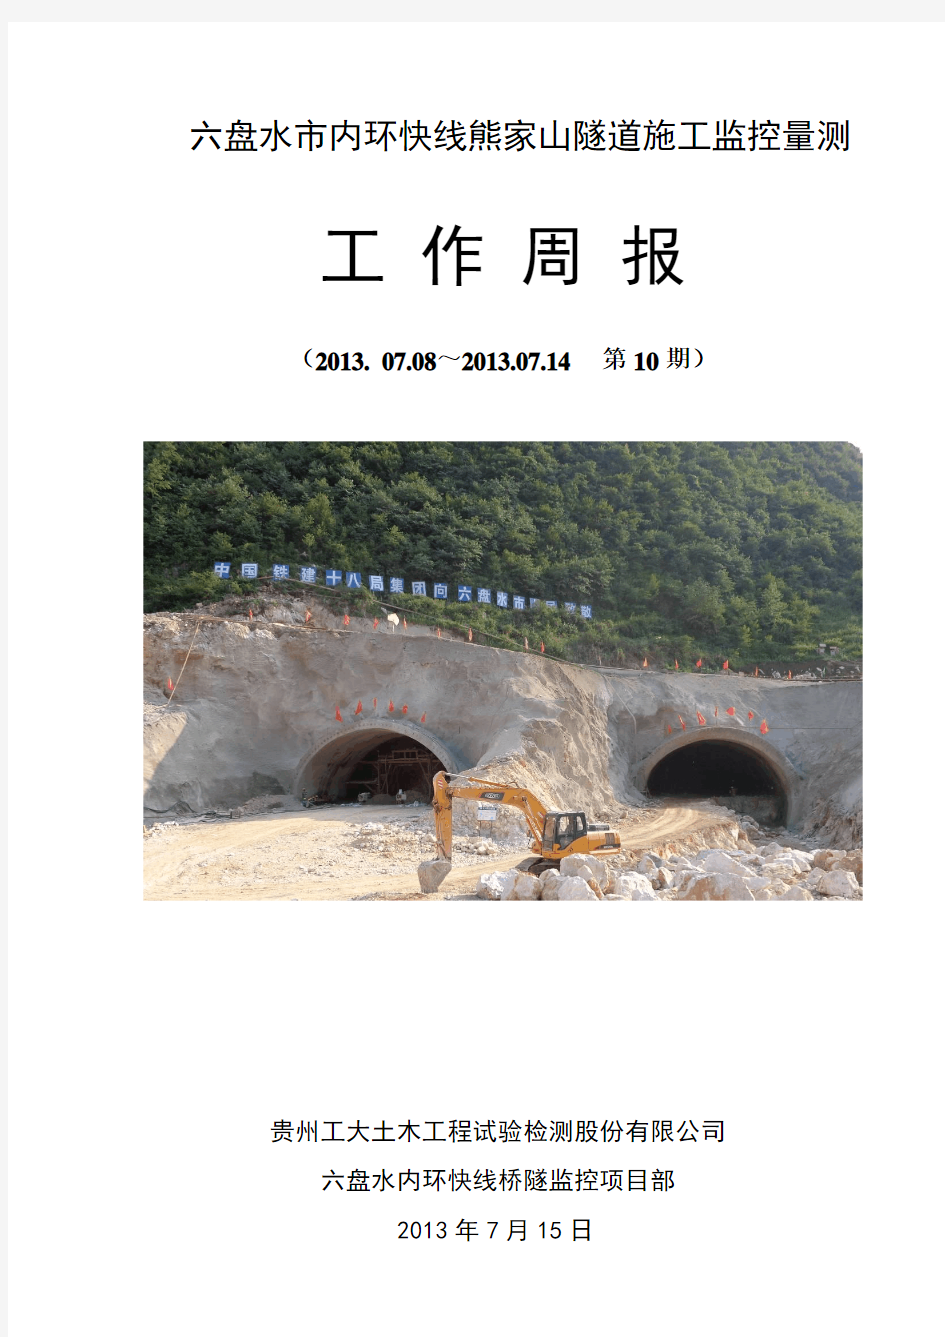 工作周报第10期2013.7.15(熊家山隧道)(1)